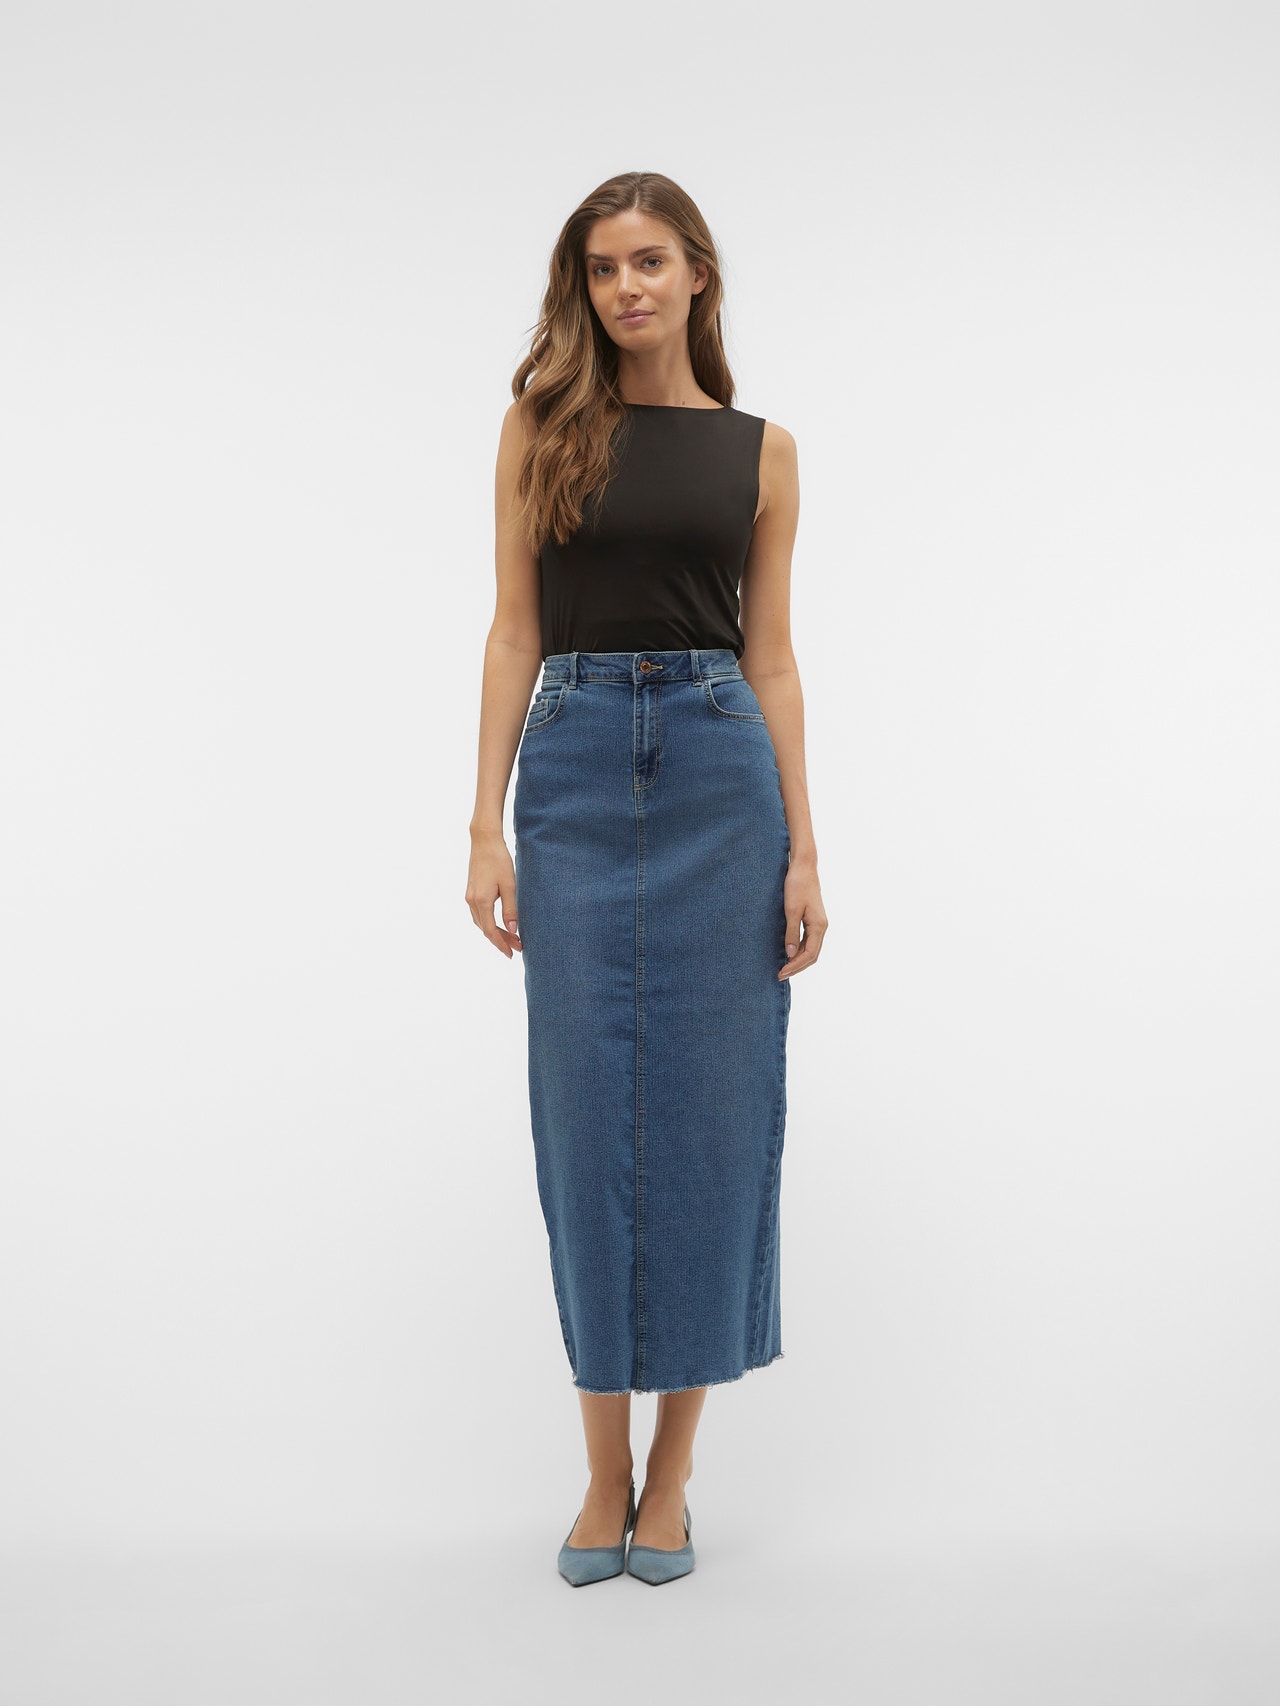 Vero Moda VMBERLA Long Skirt -Medium Blue Denim - 10310695